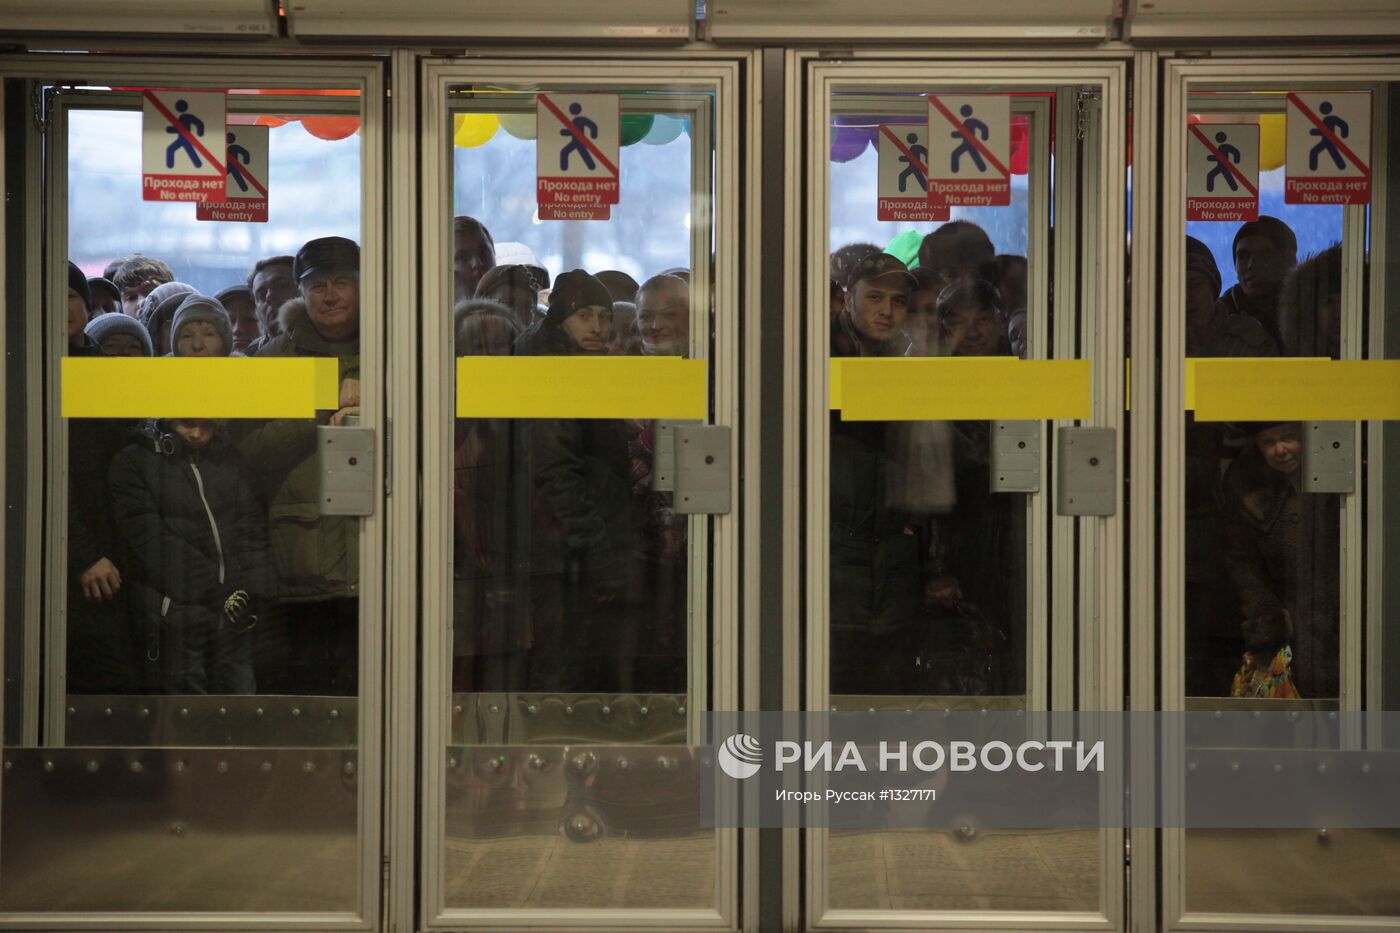 Открытие станций метро "Бухарестская" и "Международная" в СПб